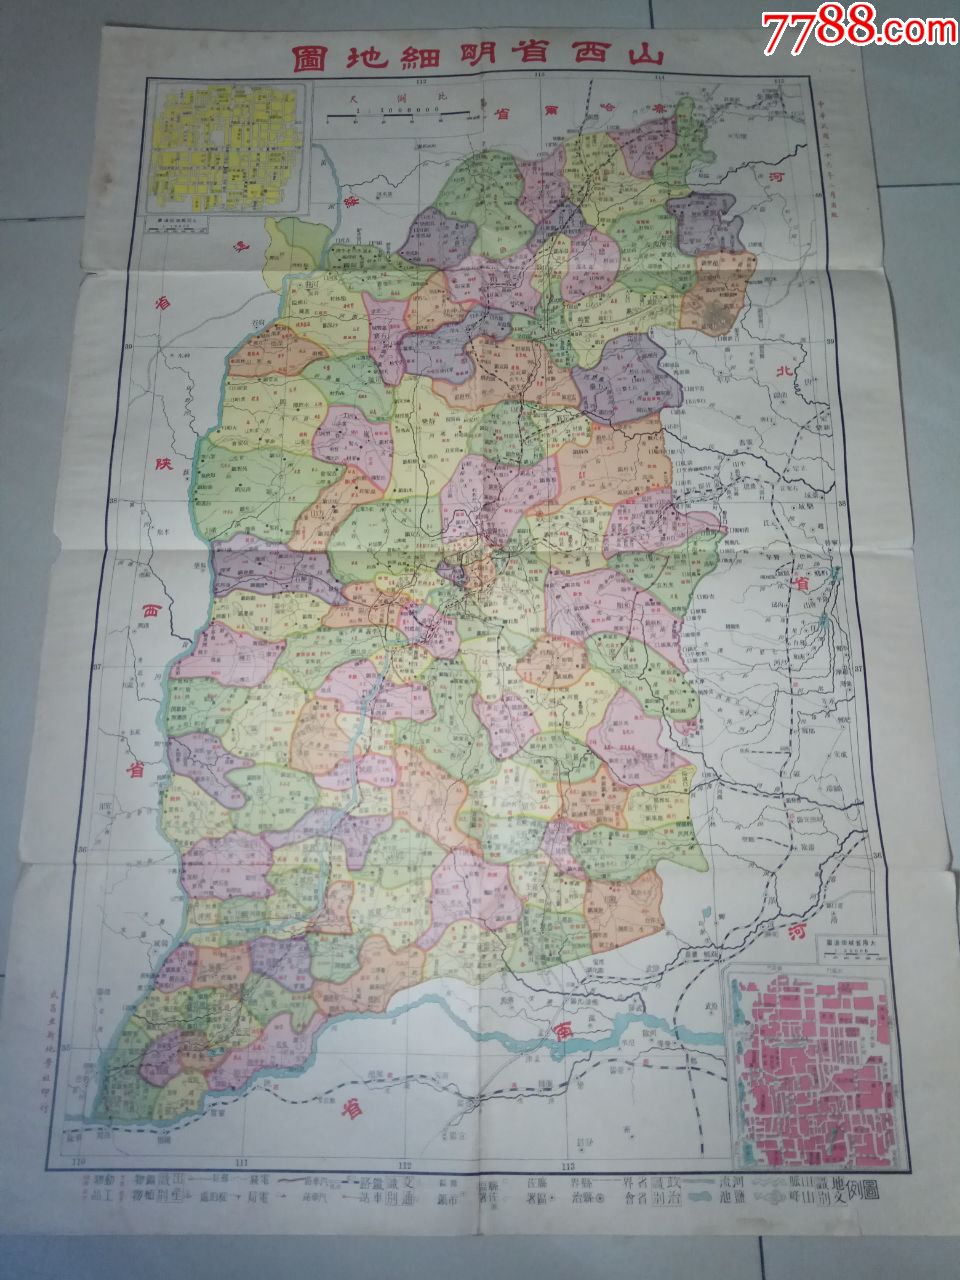 民国26年(1937年)初版地图:山西省明细地图;少见